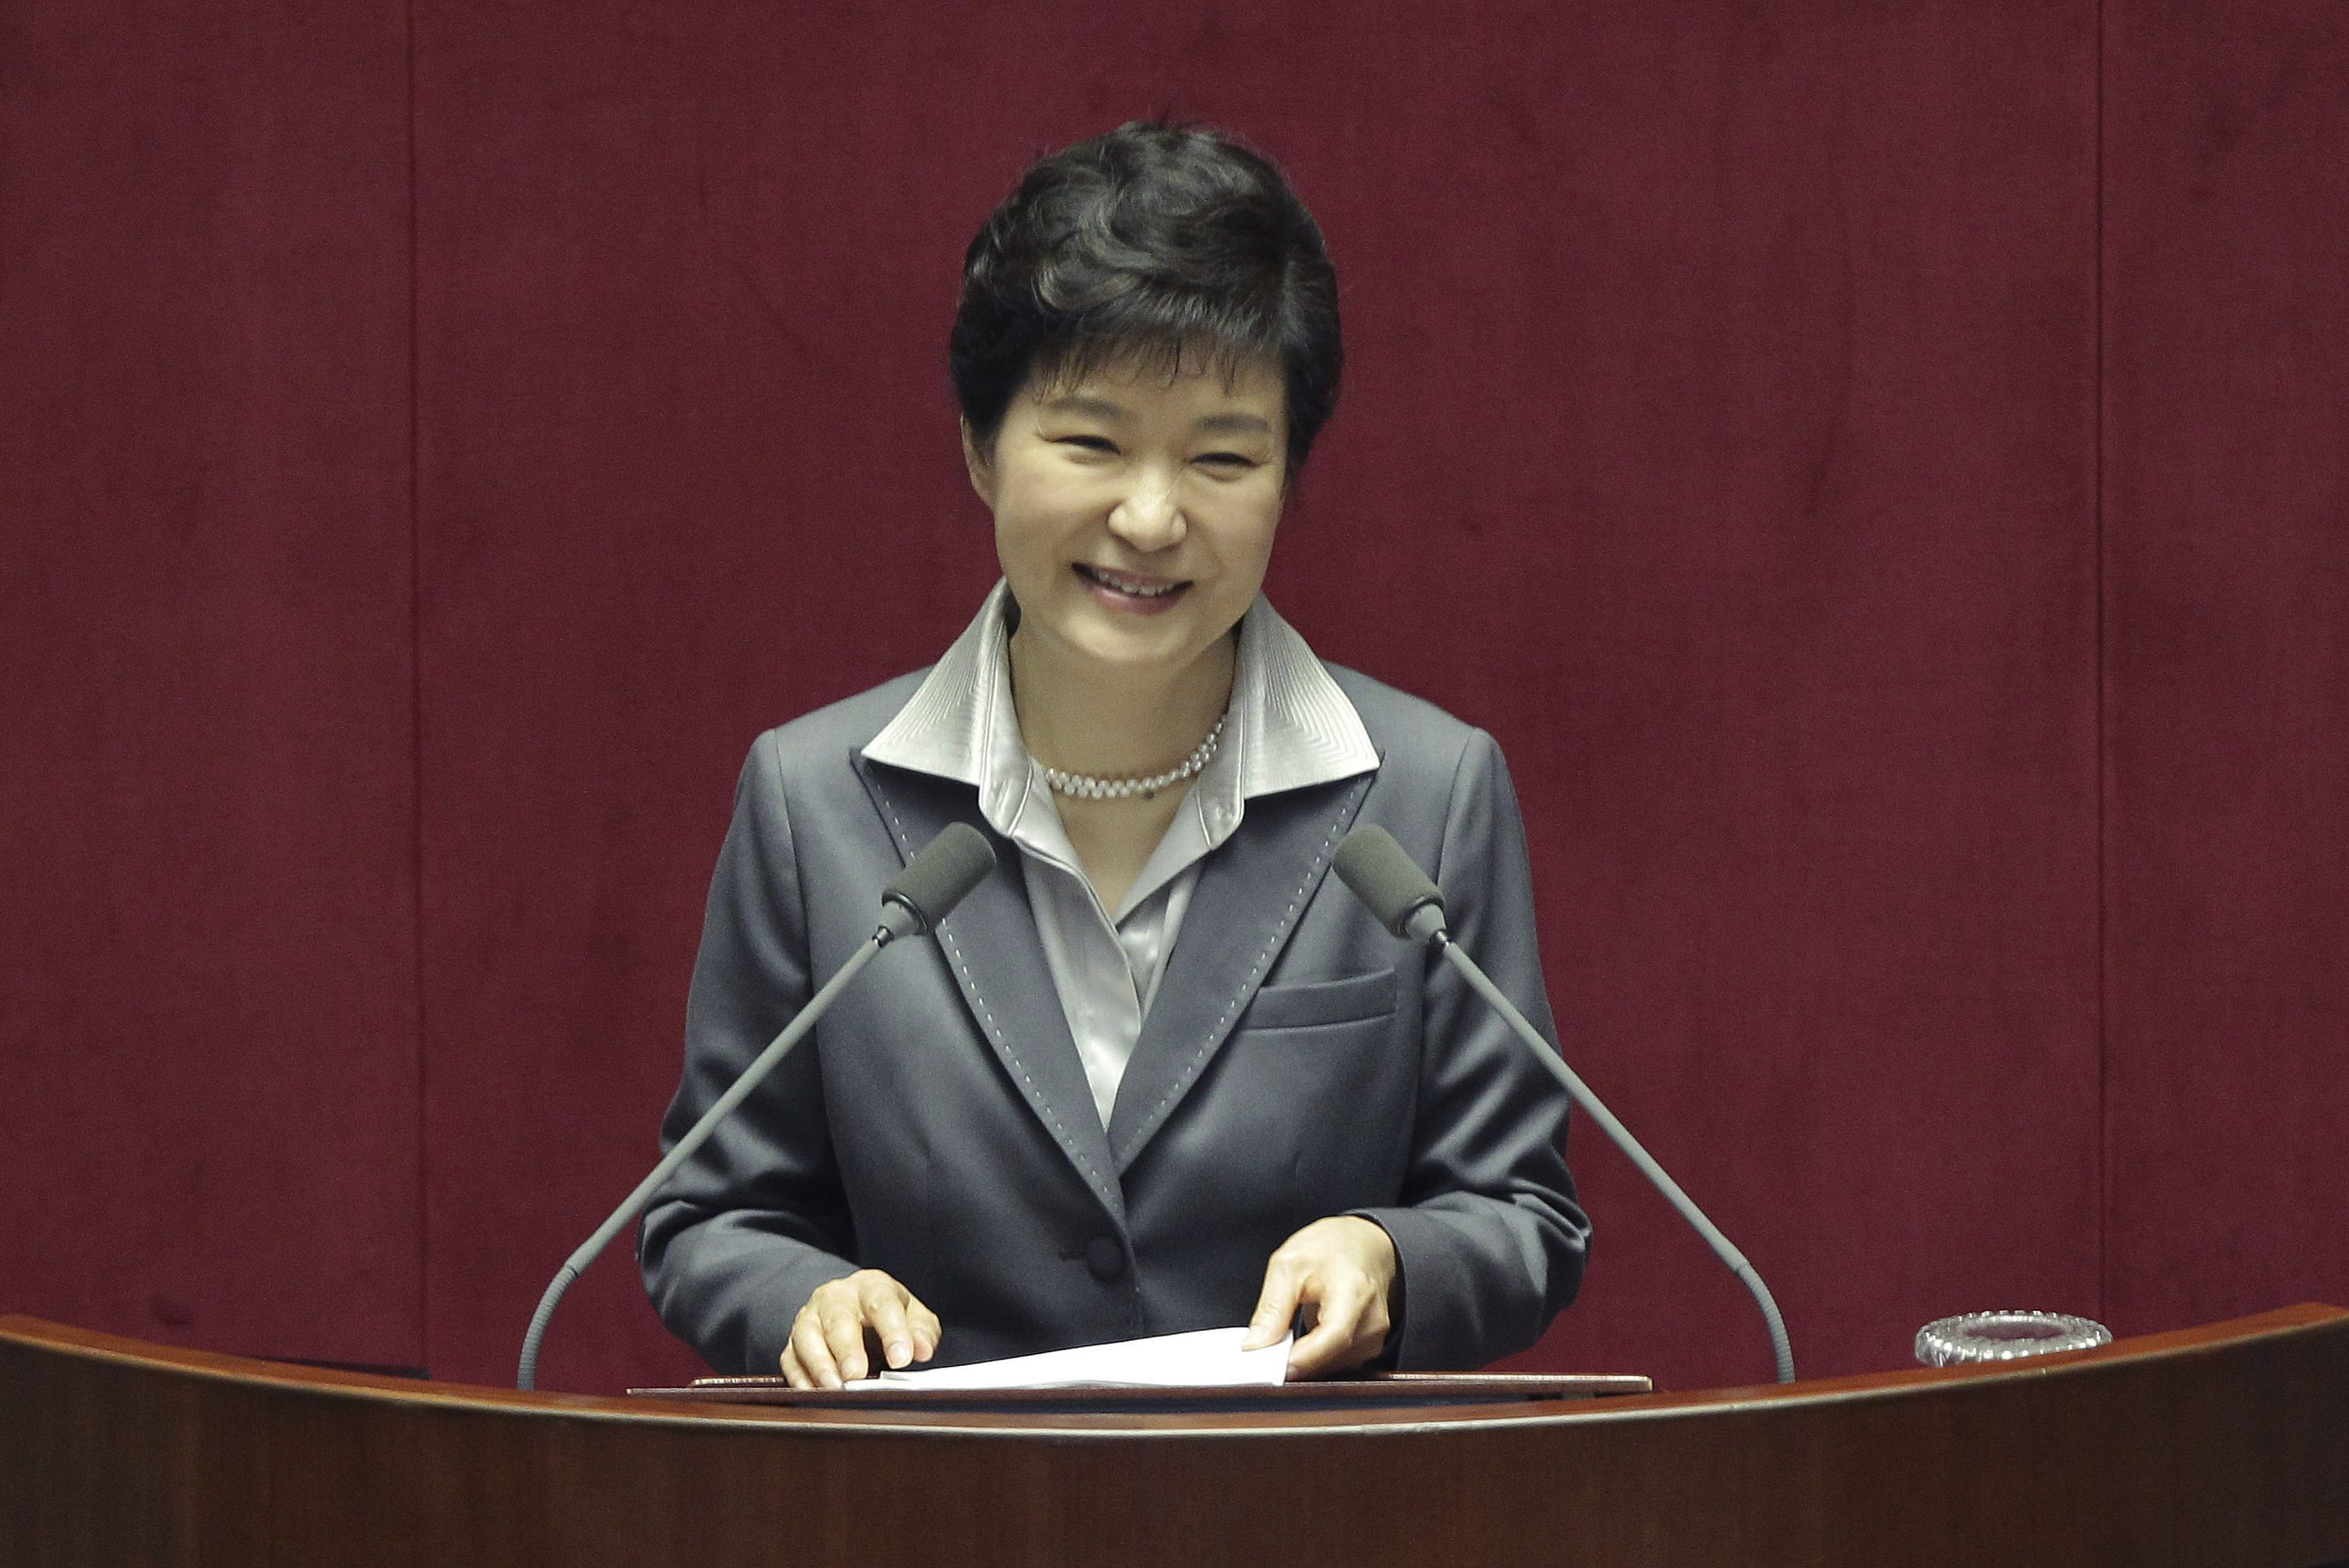 Los fiscales acusan a Park Geun-hye por abuso de poder, coerción, soborno y filtración de información confidencial estatal.